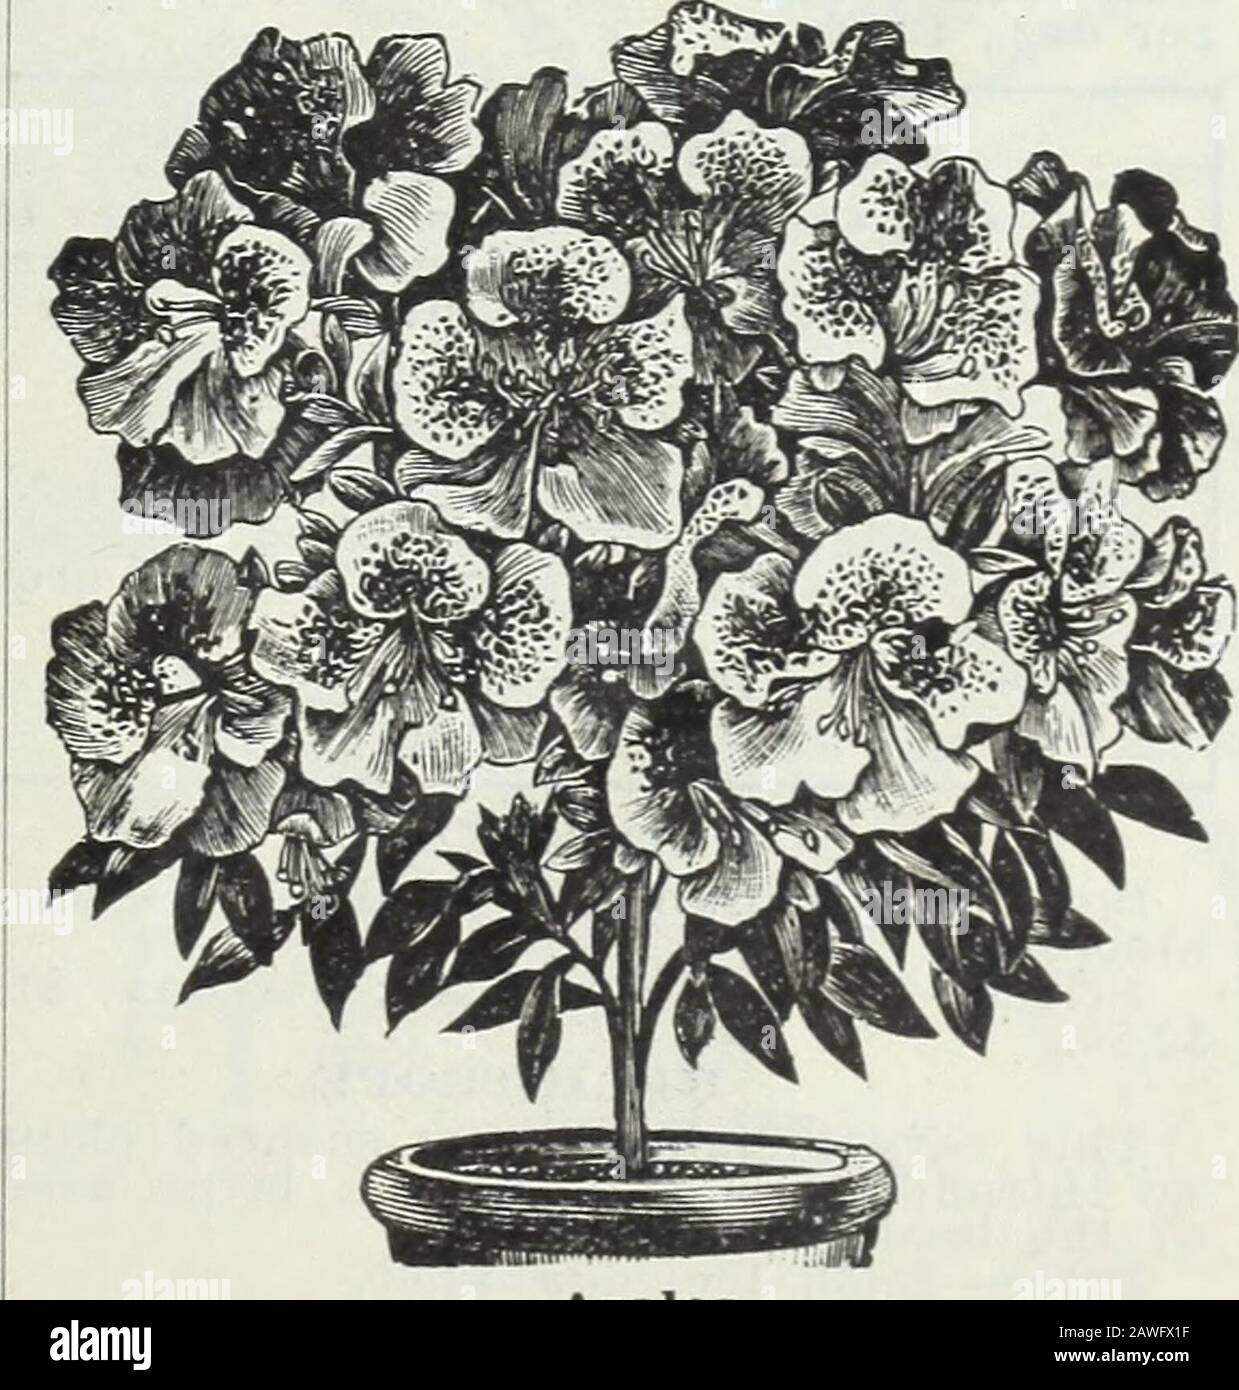 Bulbos y plantas : otoño de 1906 . m blanco puro tosalmon, rosa y rosada,  incluyendo muchos beau-*f{i6HT£o tiful mottled clases. Las plantas de  £Rt6om> como de costumbre, son grandes-tfe** y tupido